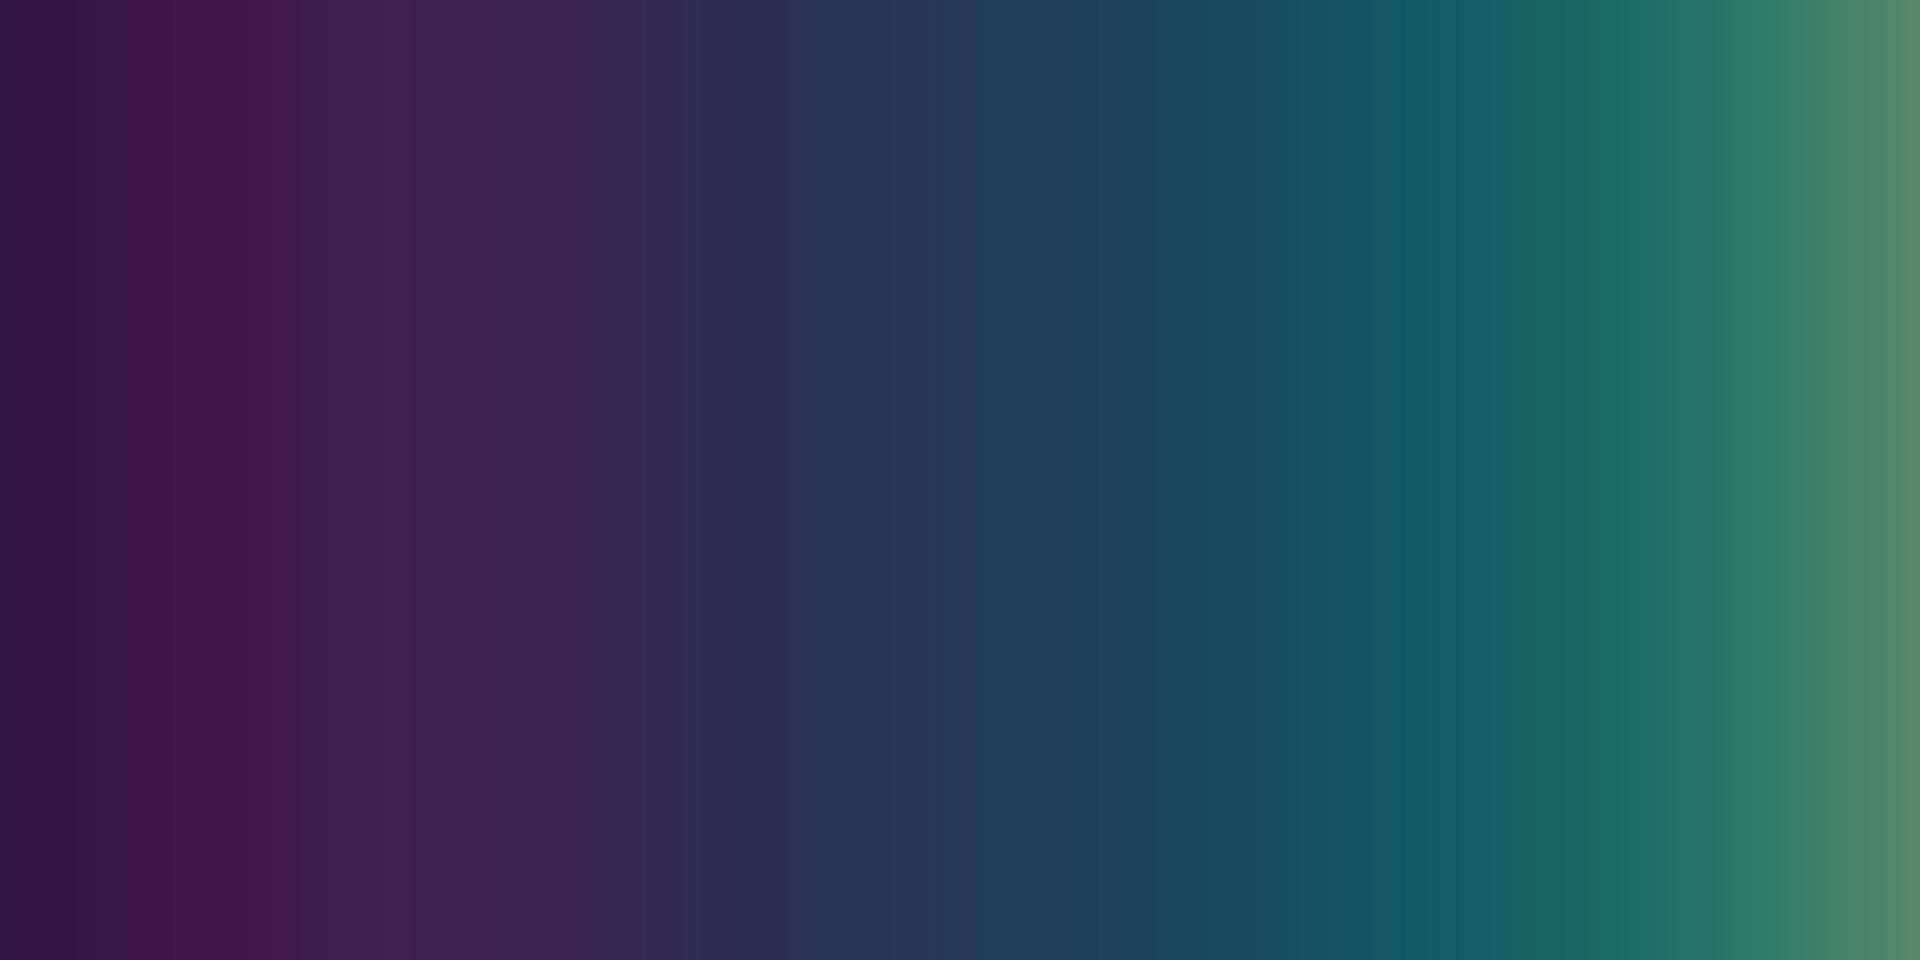 panoramisk abstrakt gradient bakgrund mall varma färger - vektor